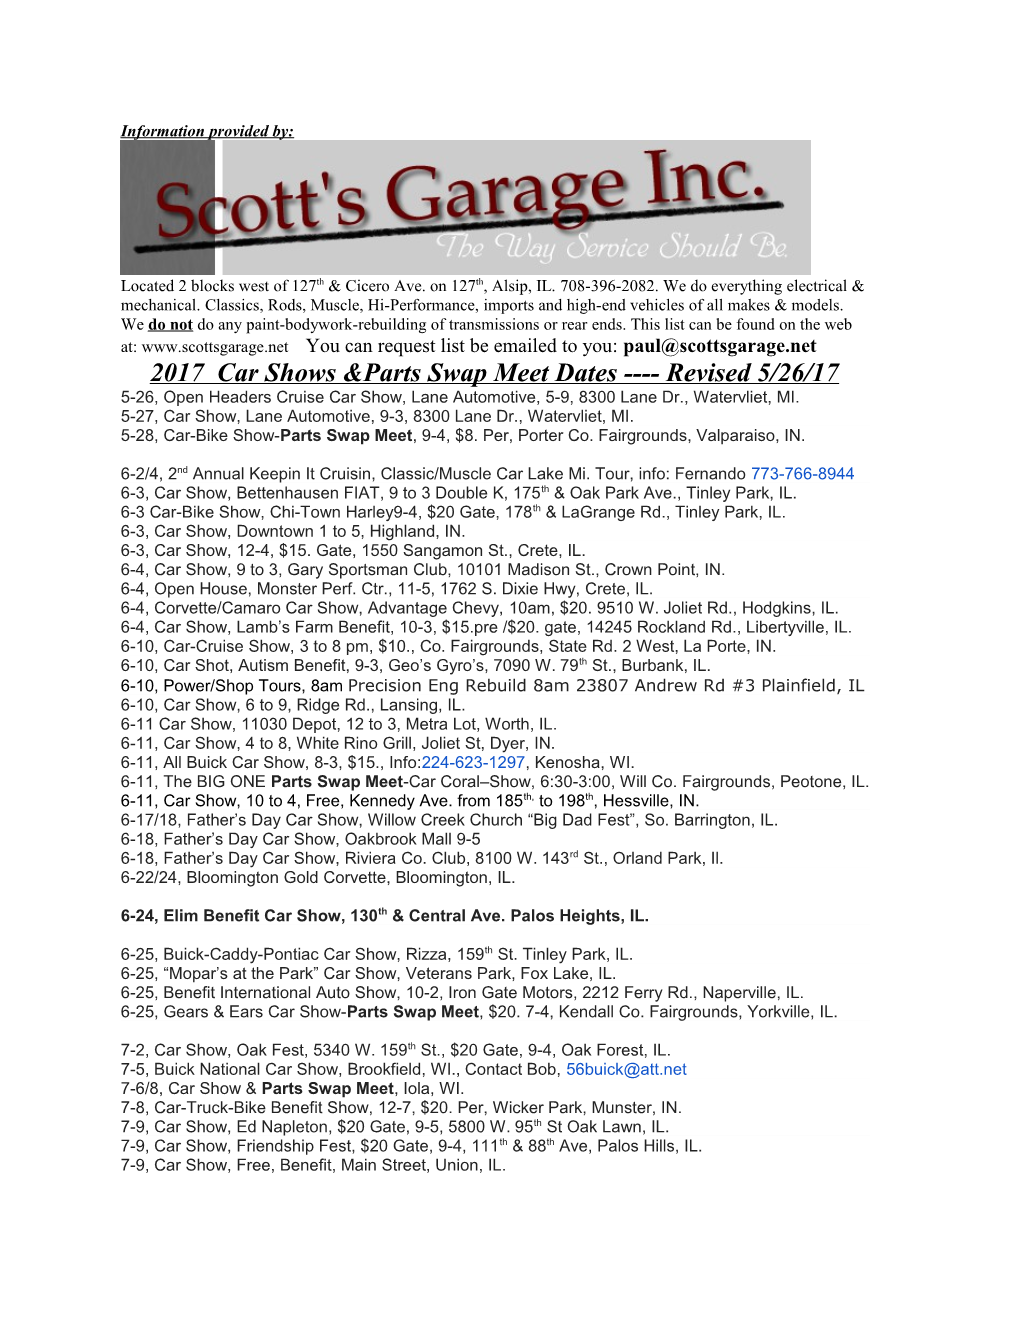 2006 Car Shows & Parts Swap Meet Dates